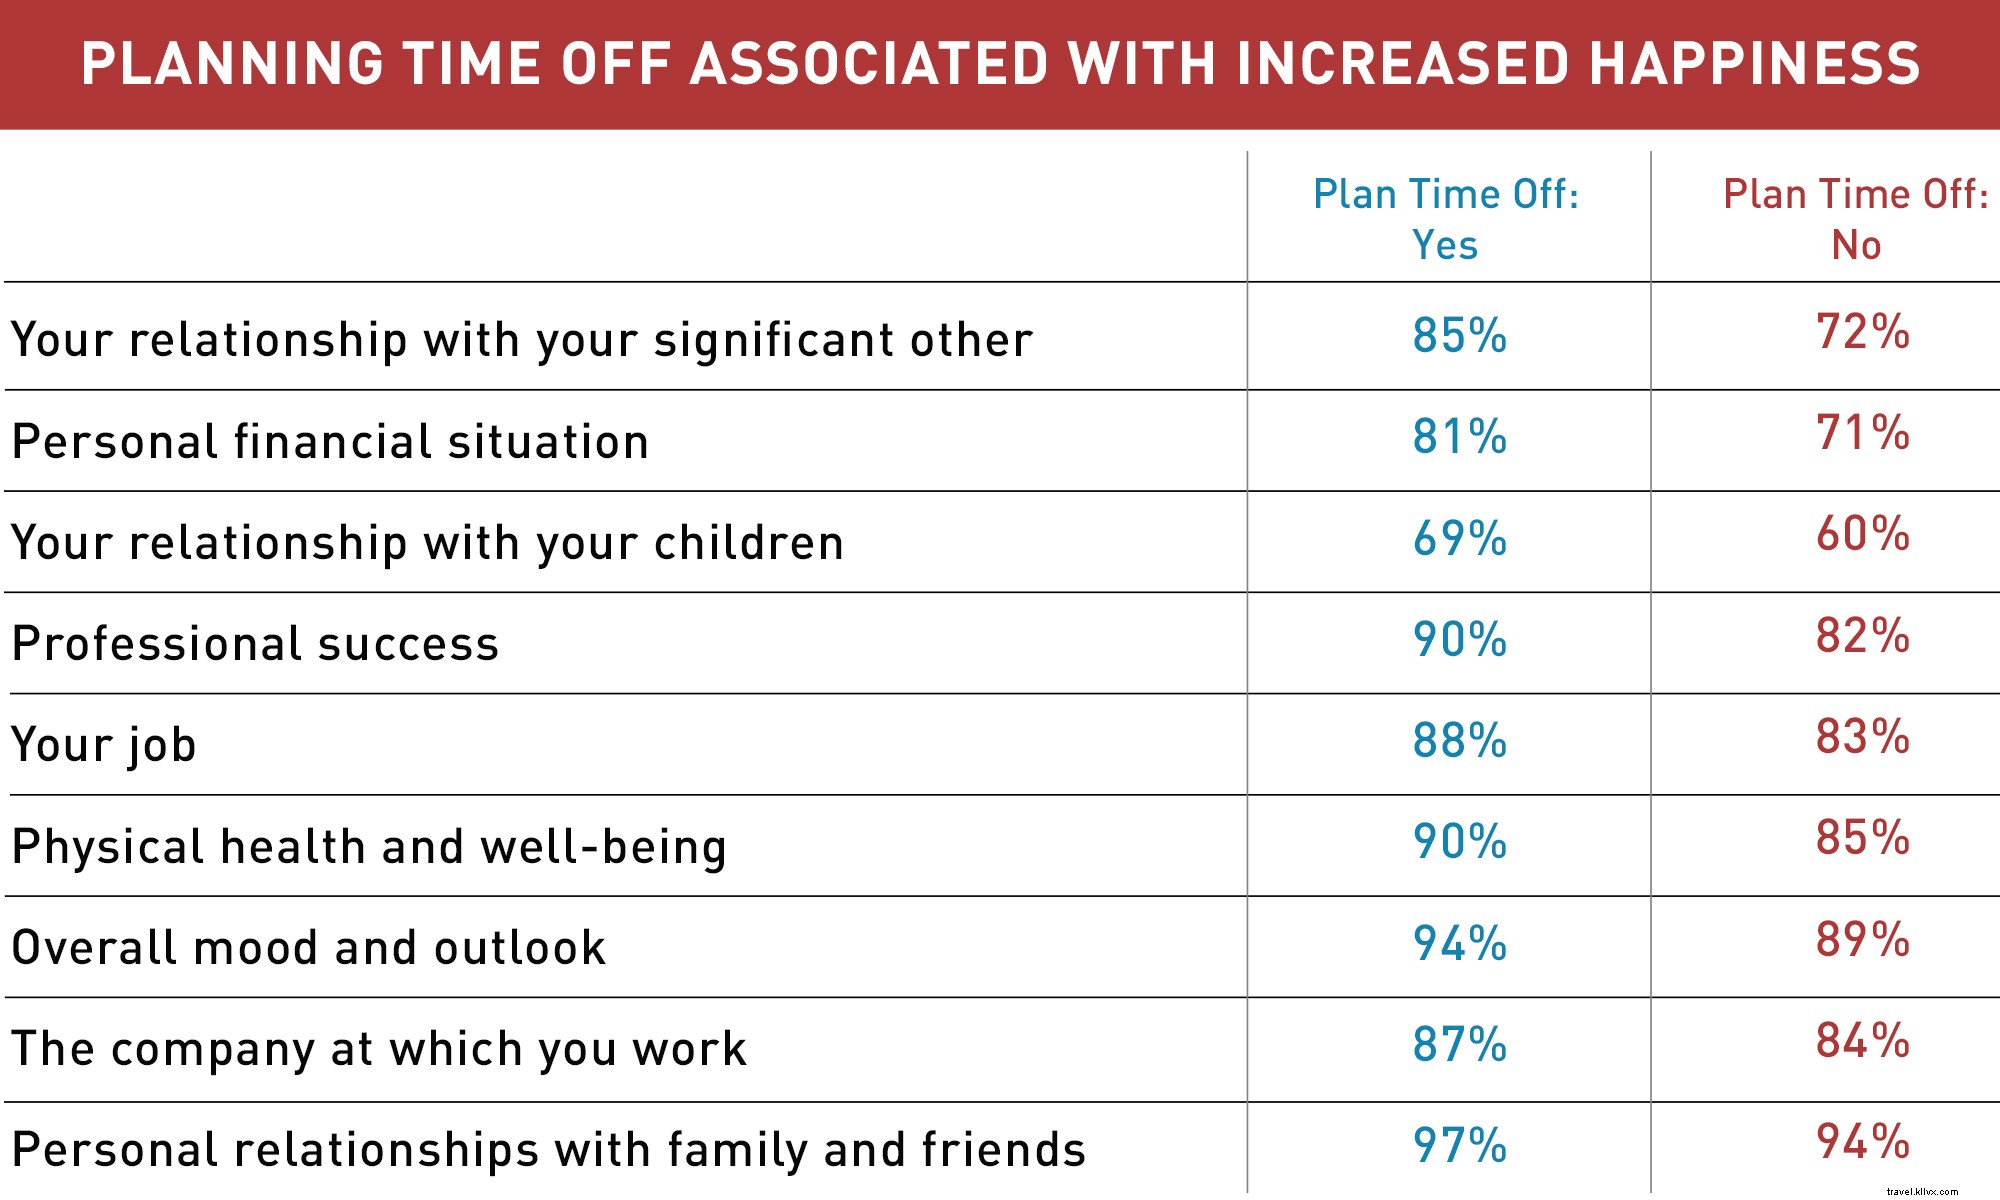 Il sondaggio dice:la pianificazione delle vacanze porta a una maggiore felicità 